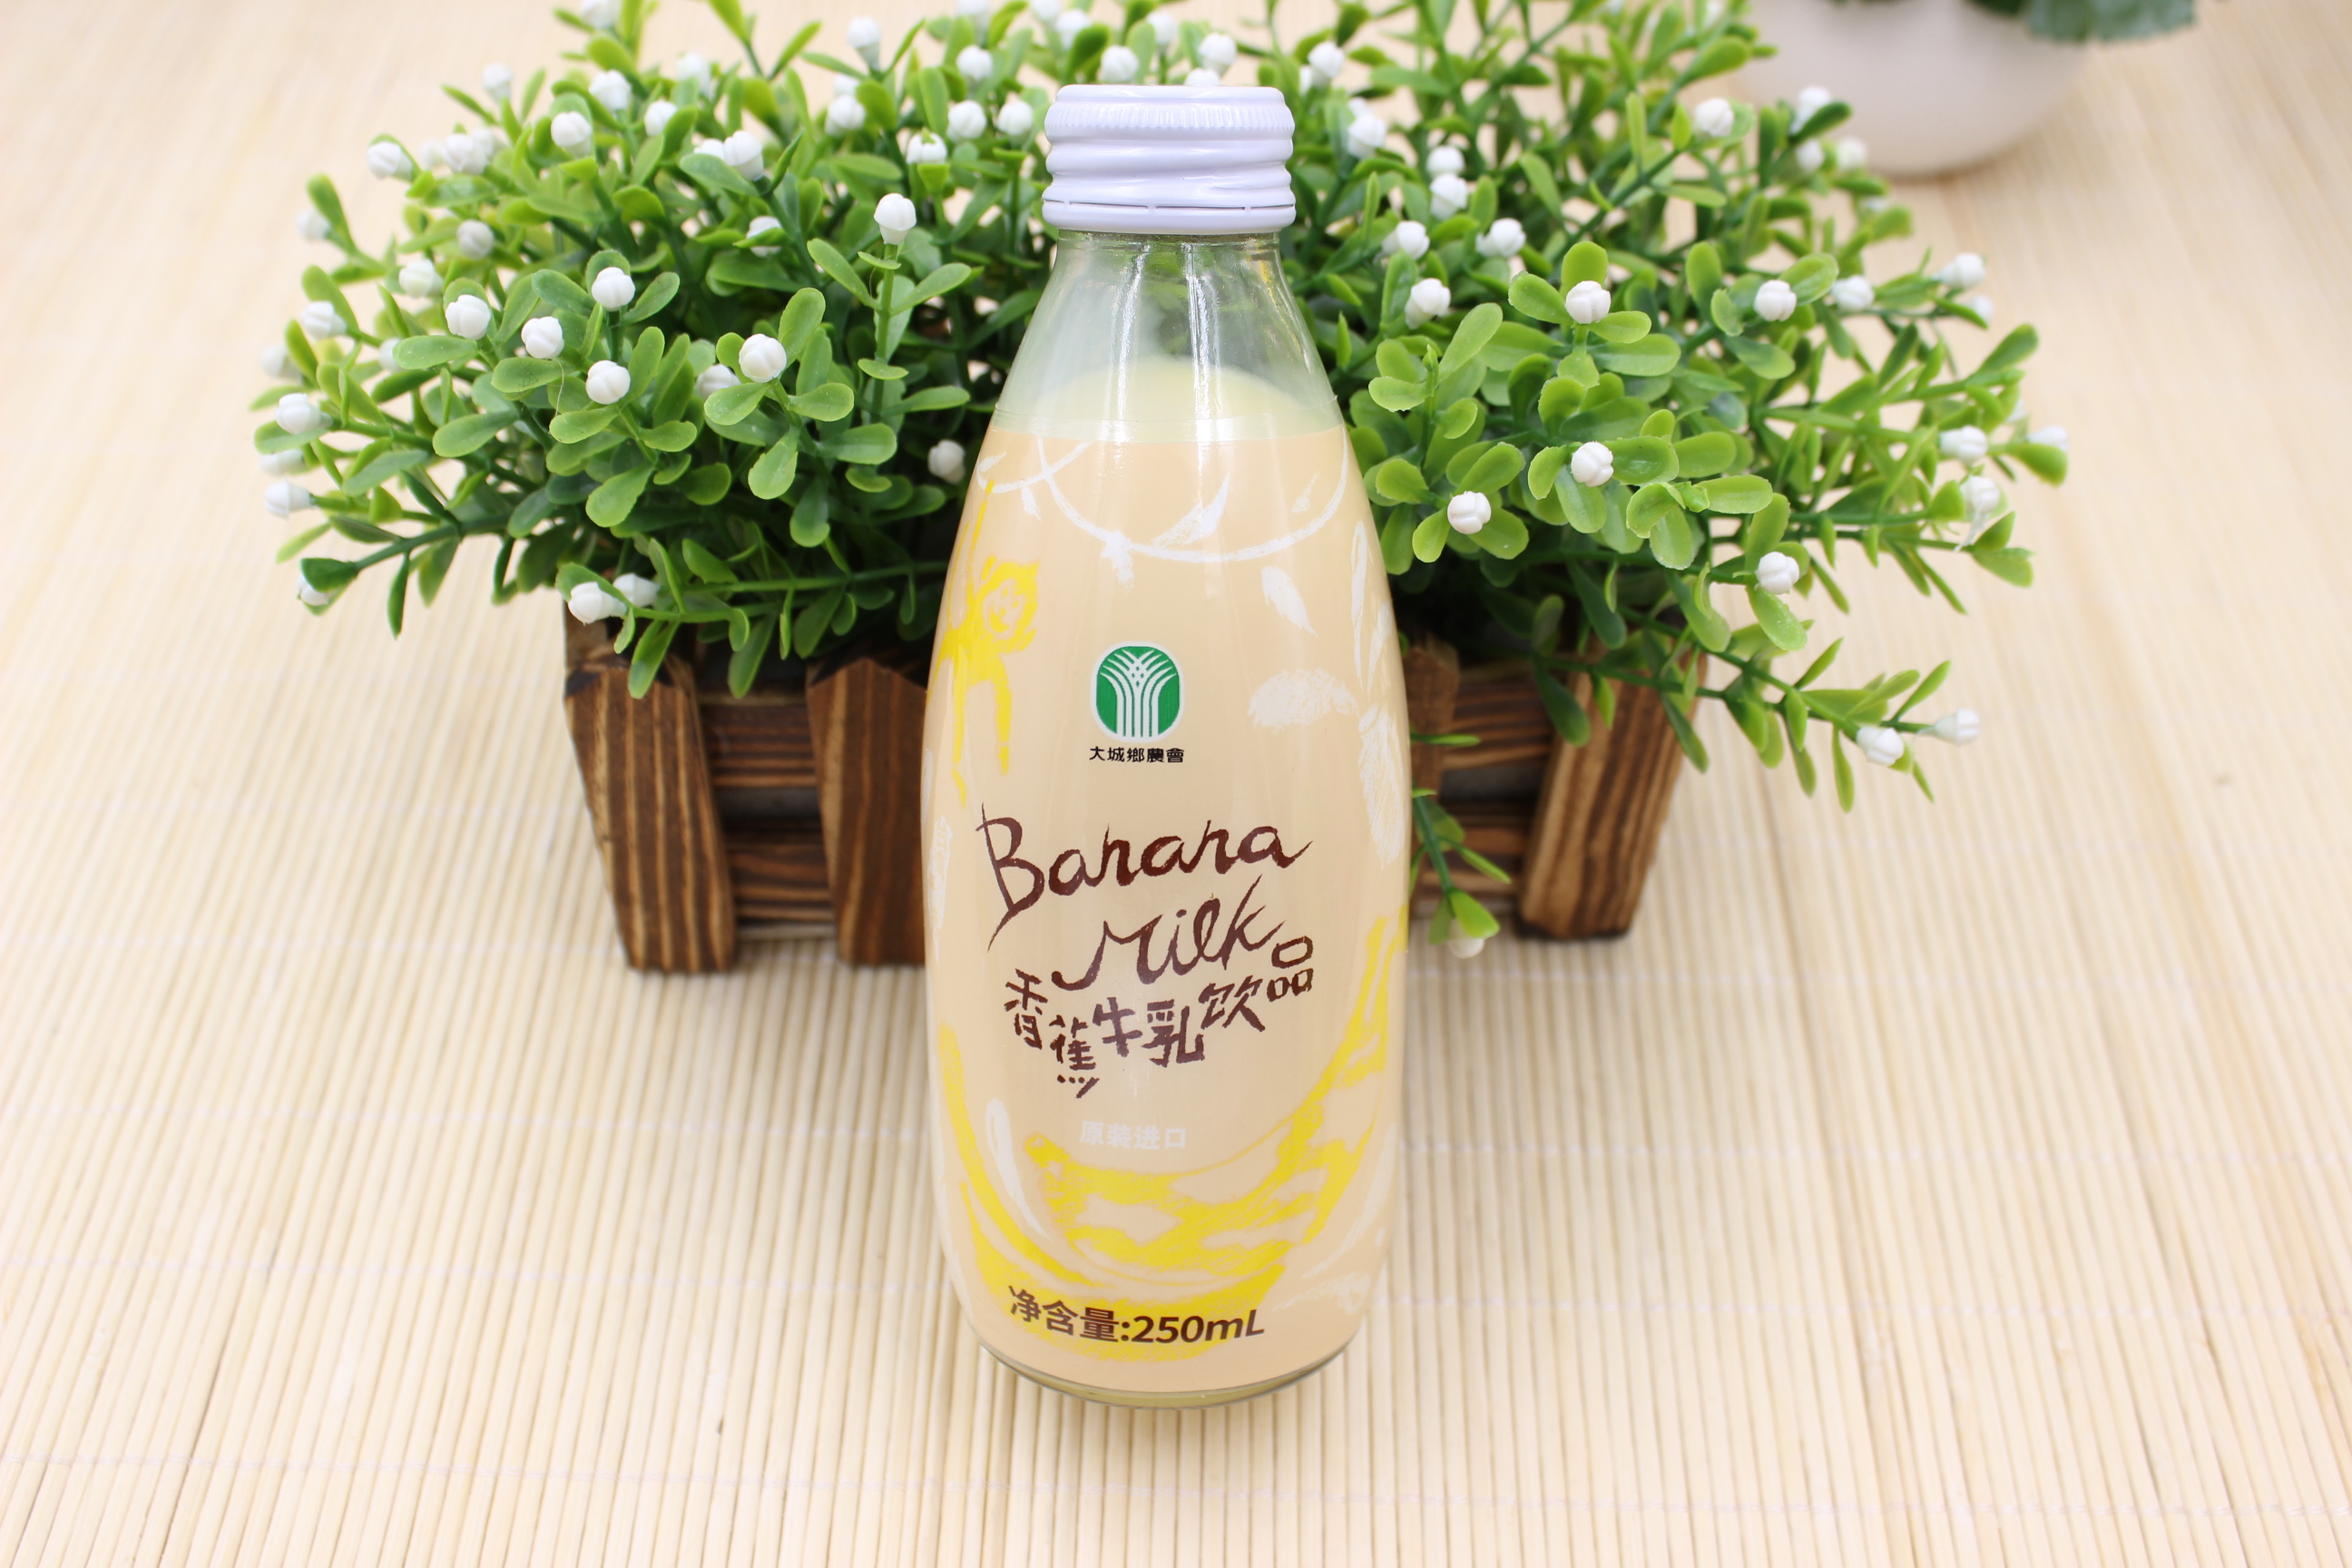 6瓶包邮 台湾香蕉牛奶250ml含乳饮料玻璃瓶装 营养早餐牛乳正品促